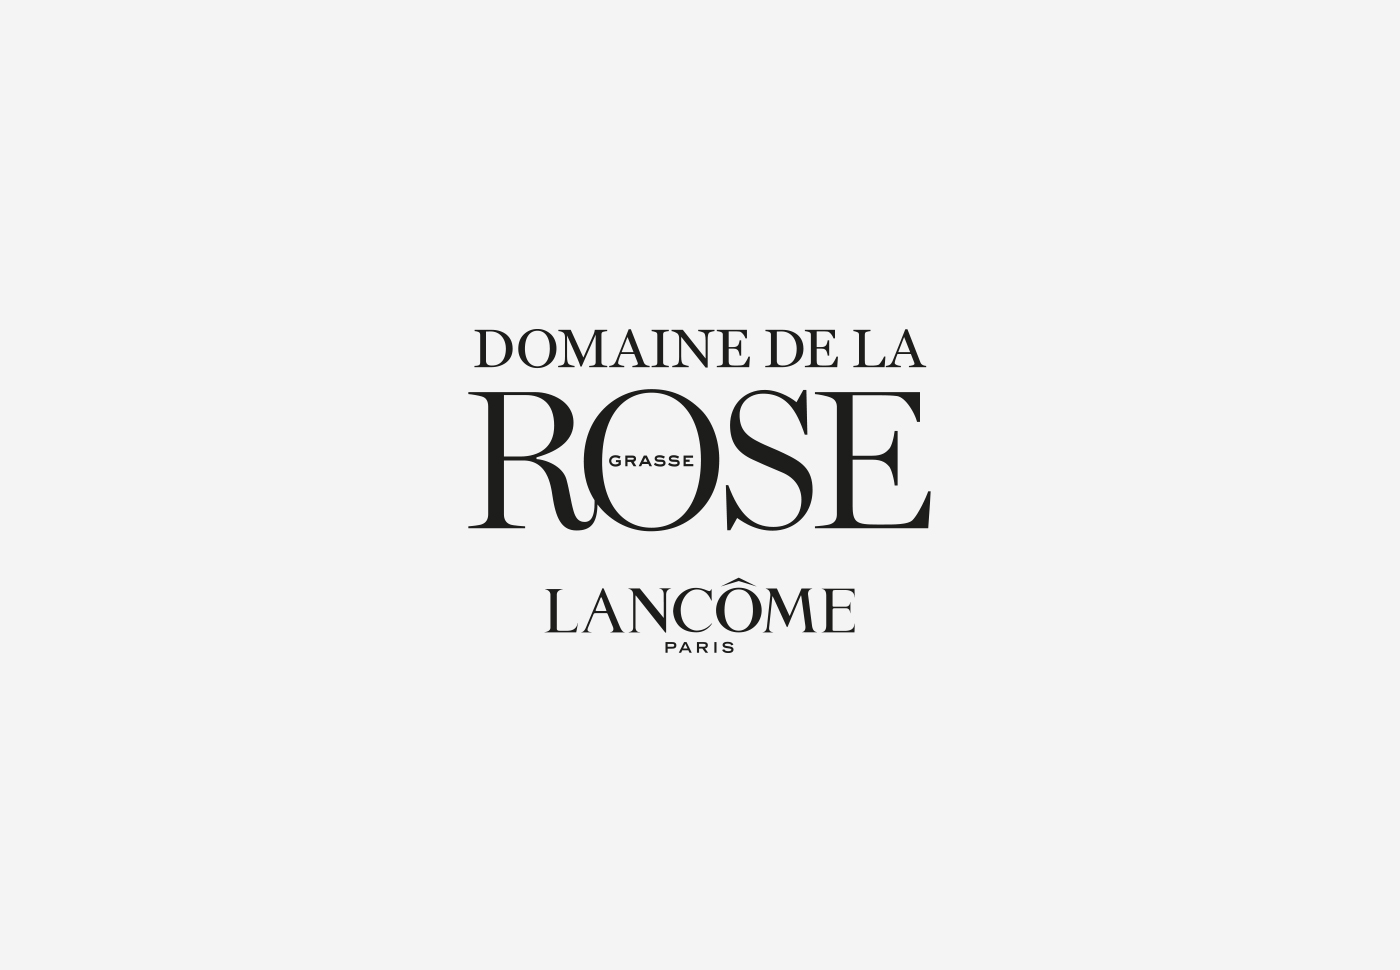 Lancôme Paris – Domaine de la Rose